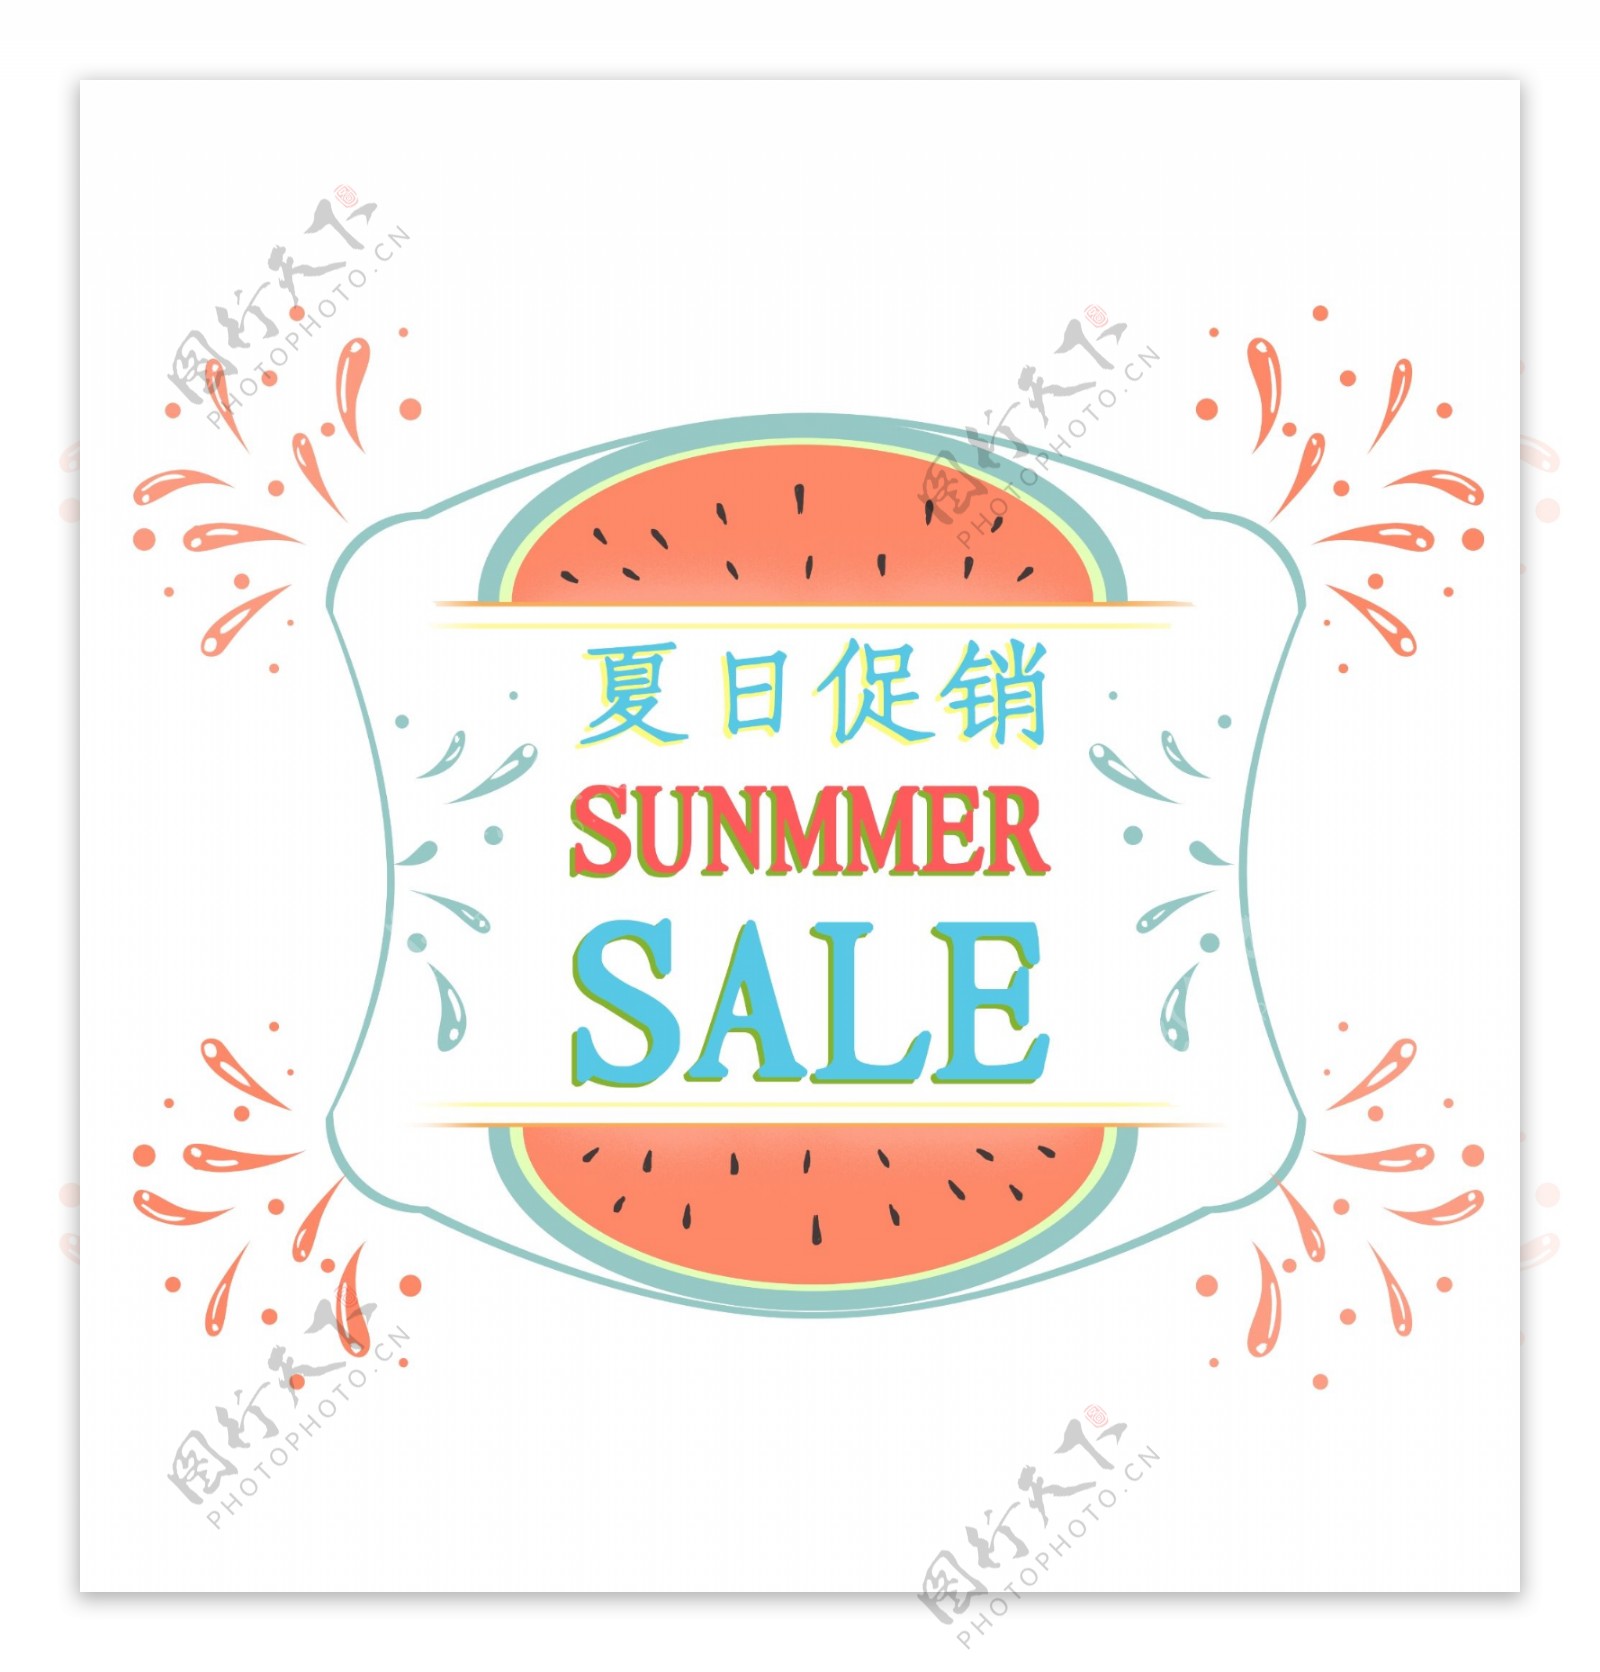 小清新夏日促销SummerSALE标签